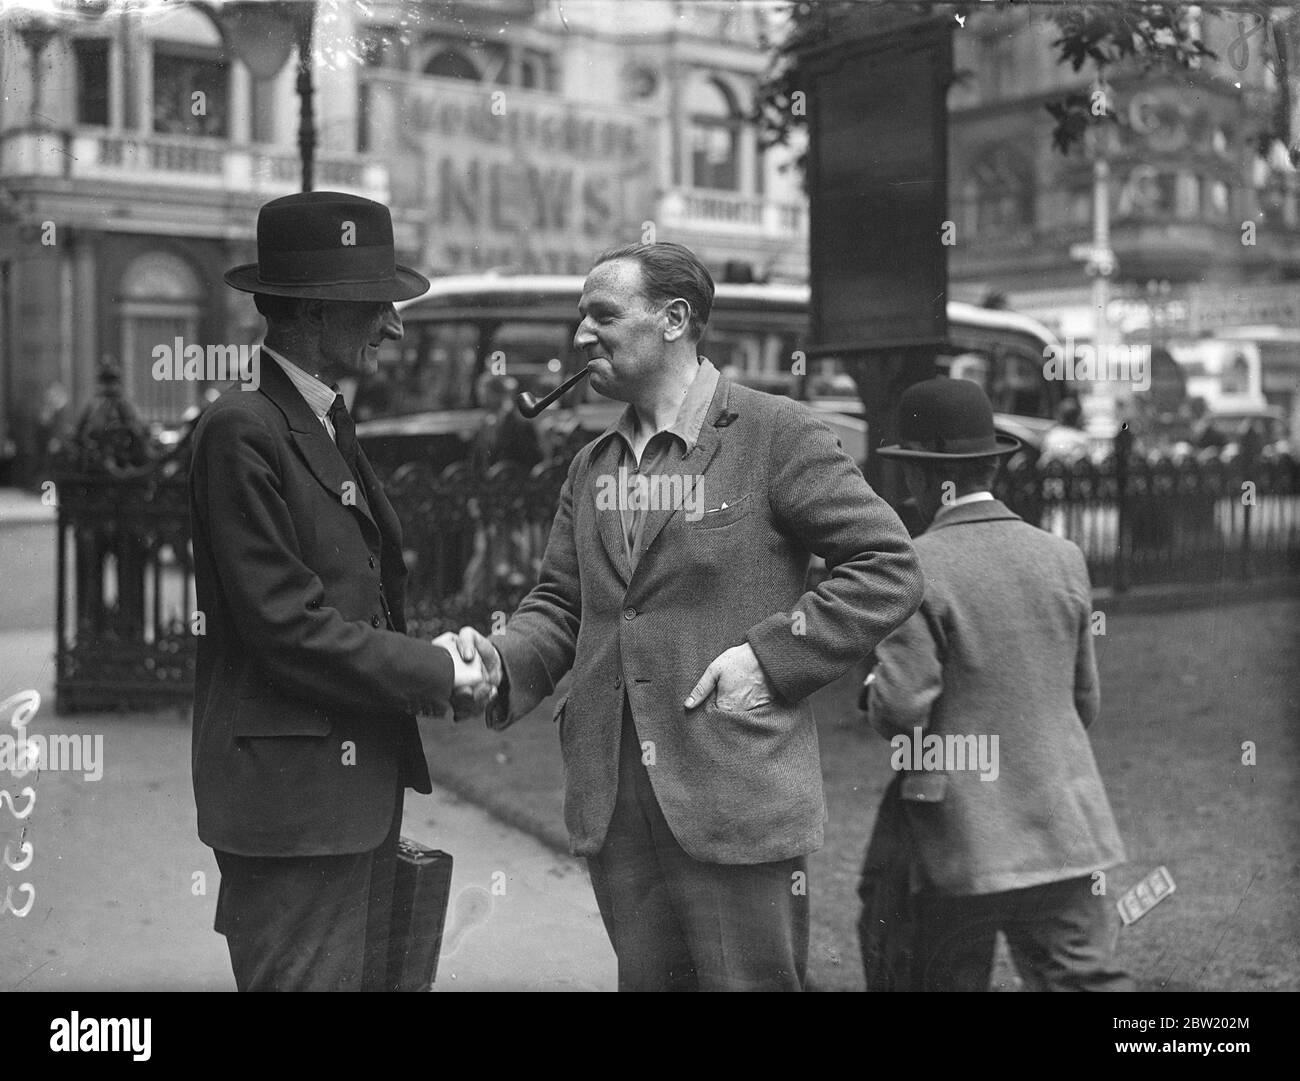 Als Tramp-Schauspieler aus London gekleidet, schüttelt Frank Crawshaw einem Freund die Hände, als er den Leicester Square auf einer einmonatigen Tour durch London verließ. In dem er sich mit Down and Out mischen und in Doss-Häusern schlafen wird, um lokale Farbe für einen neuen Film zu gewinnen. 15 Juli 1937. Stockfoto